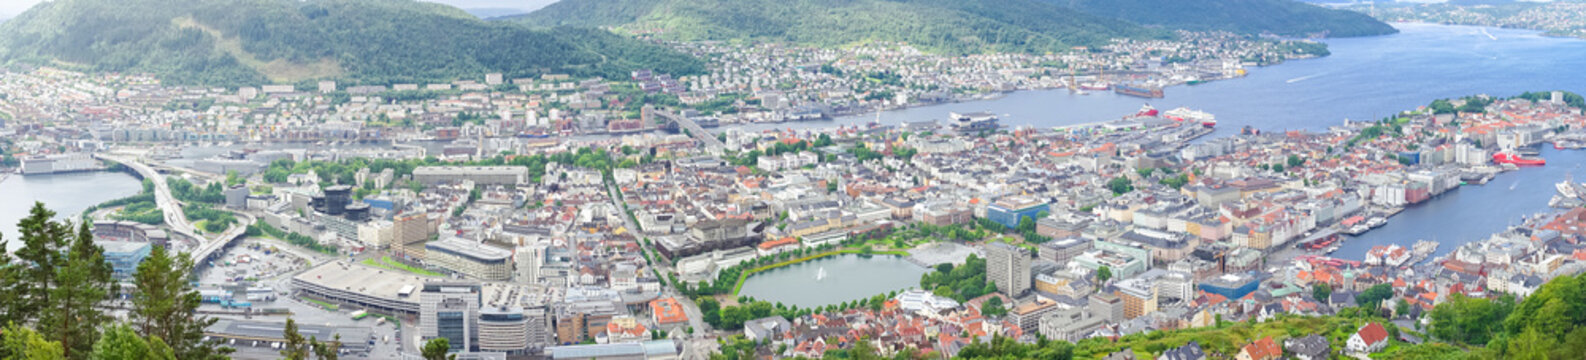 Stadtpanorama von Bergen vom Aussichtspunkt Floyen, Norwegen